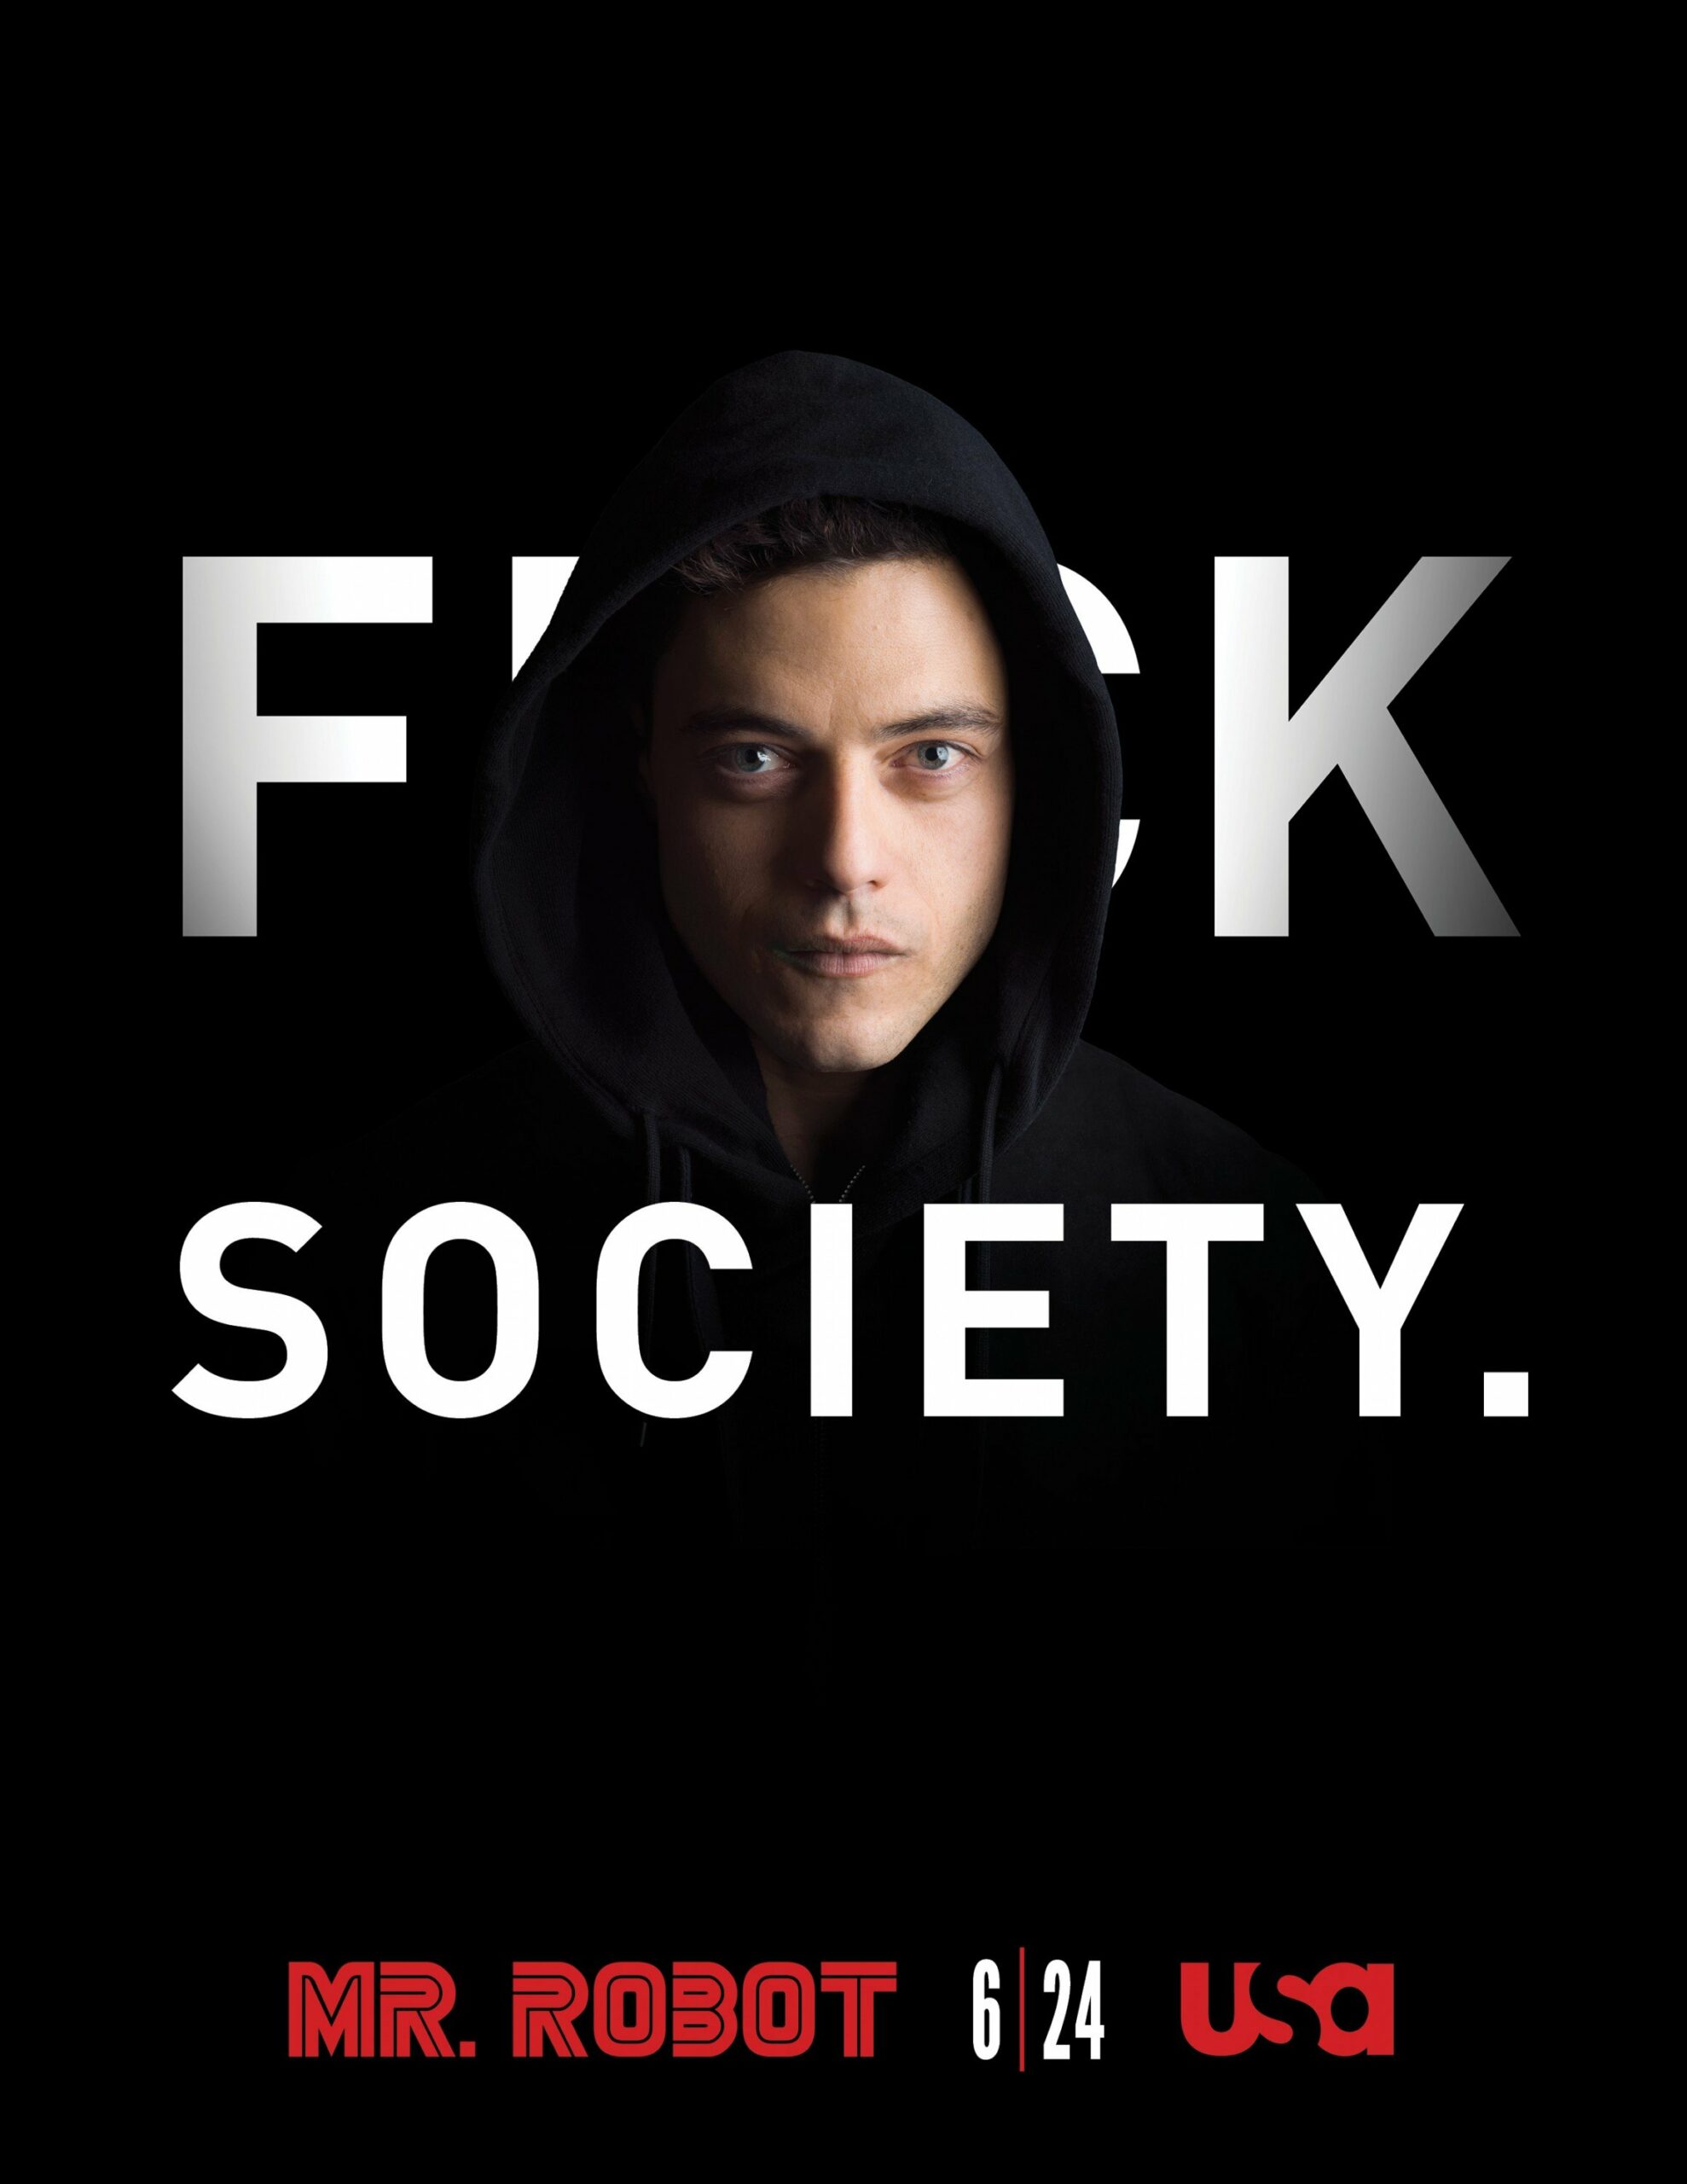 Poster pour la saison 1 de Mr. Robot avec la tagline 'Fuck Society'